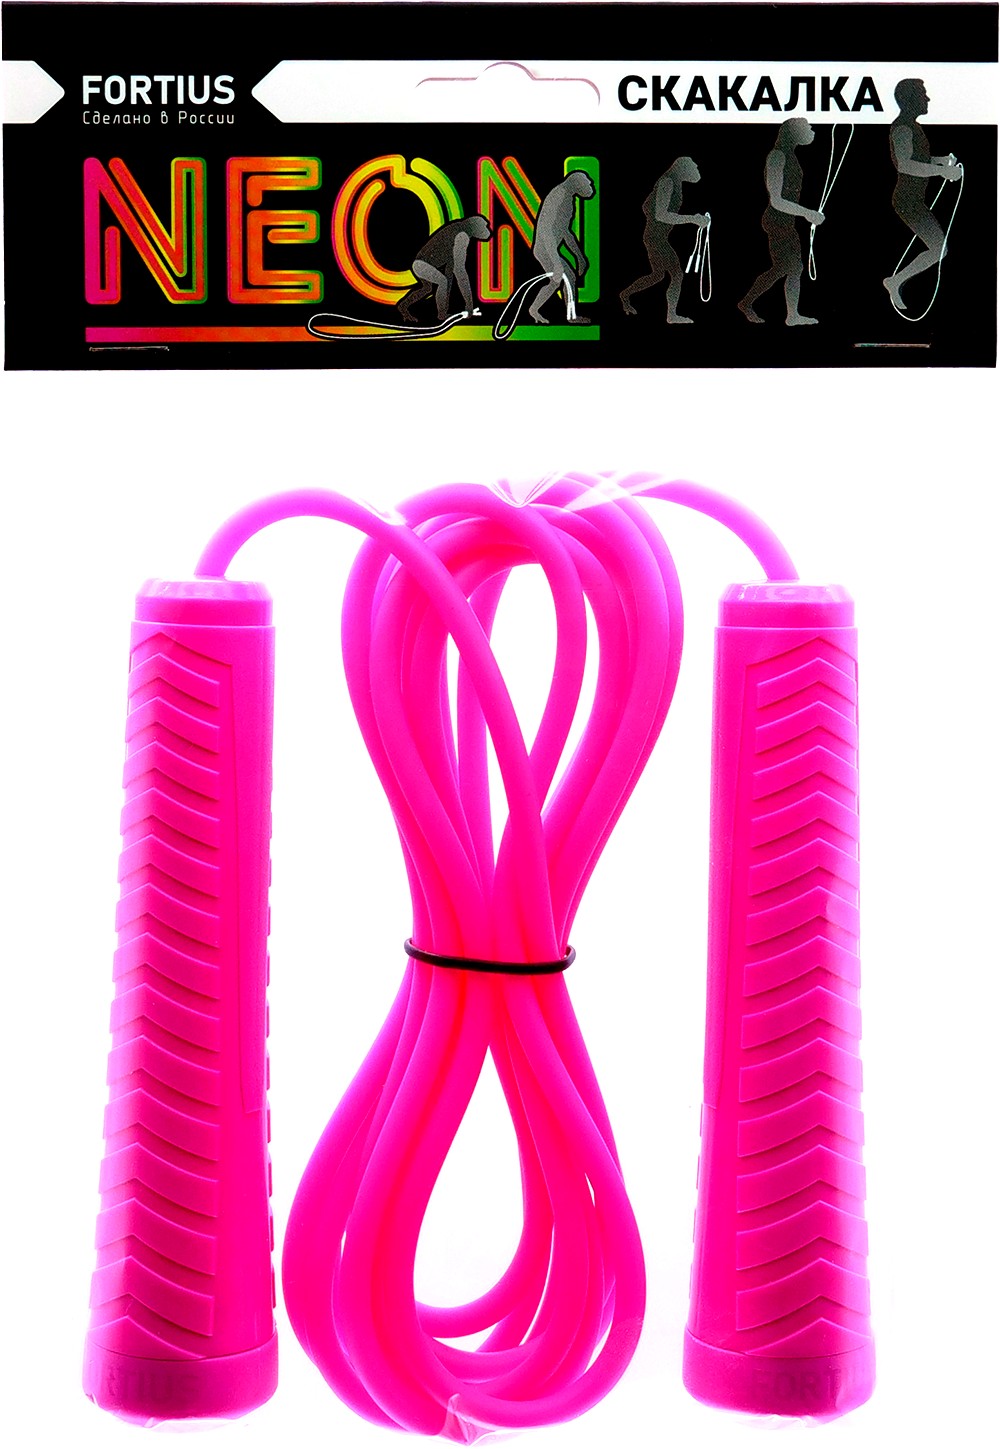 Скакалка Fortius Neon шнур 3 м в пакете (розовая) 1000_1449